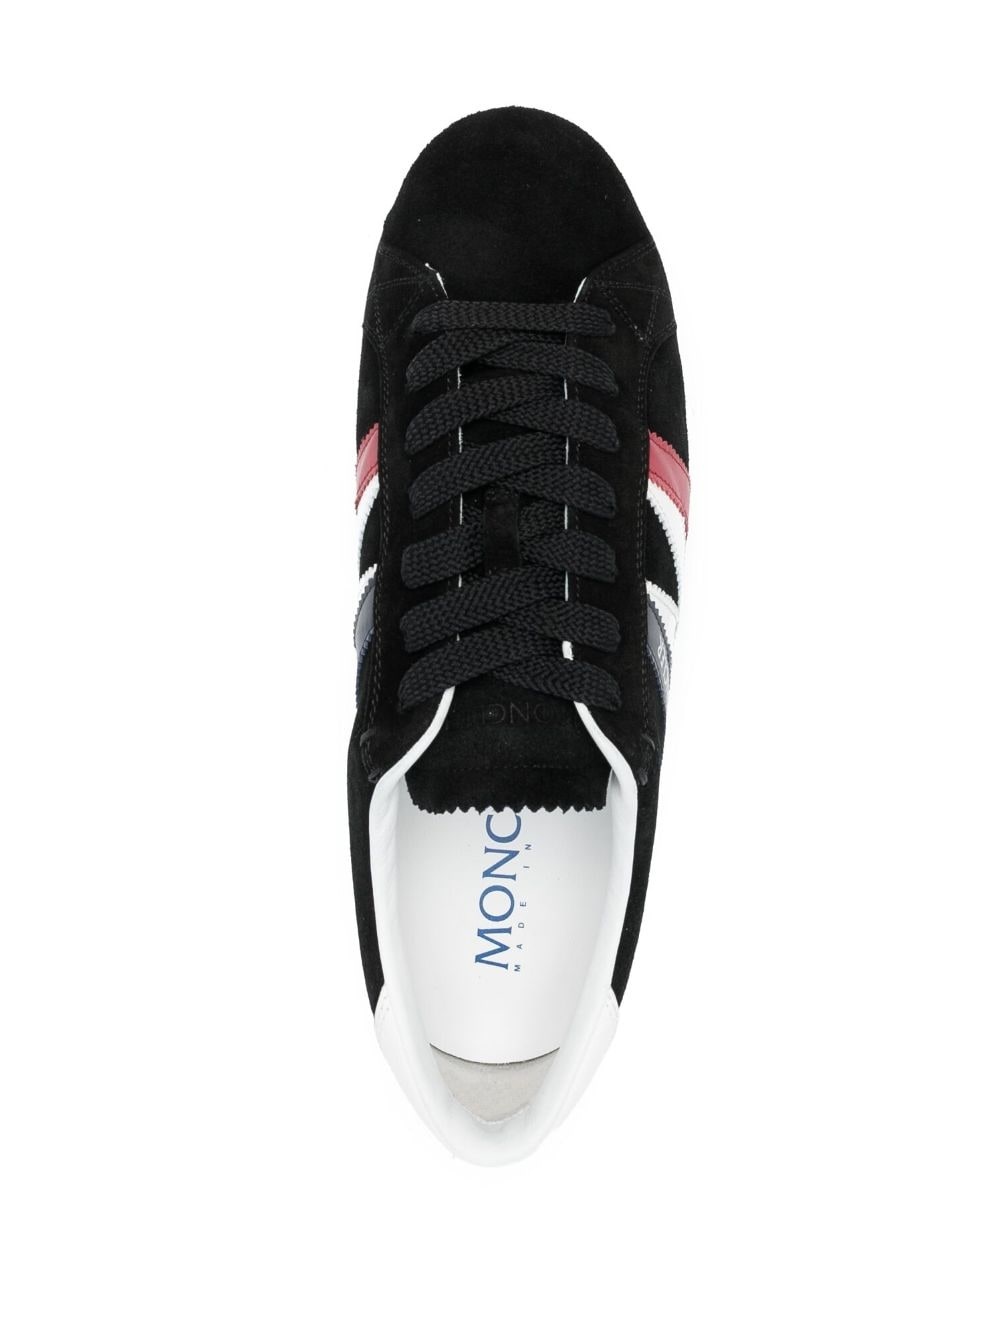 Monaco leather sneakers - 4